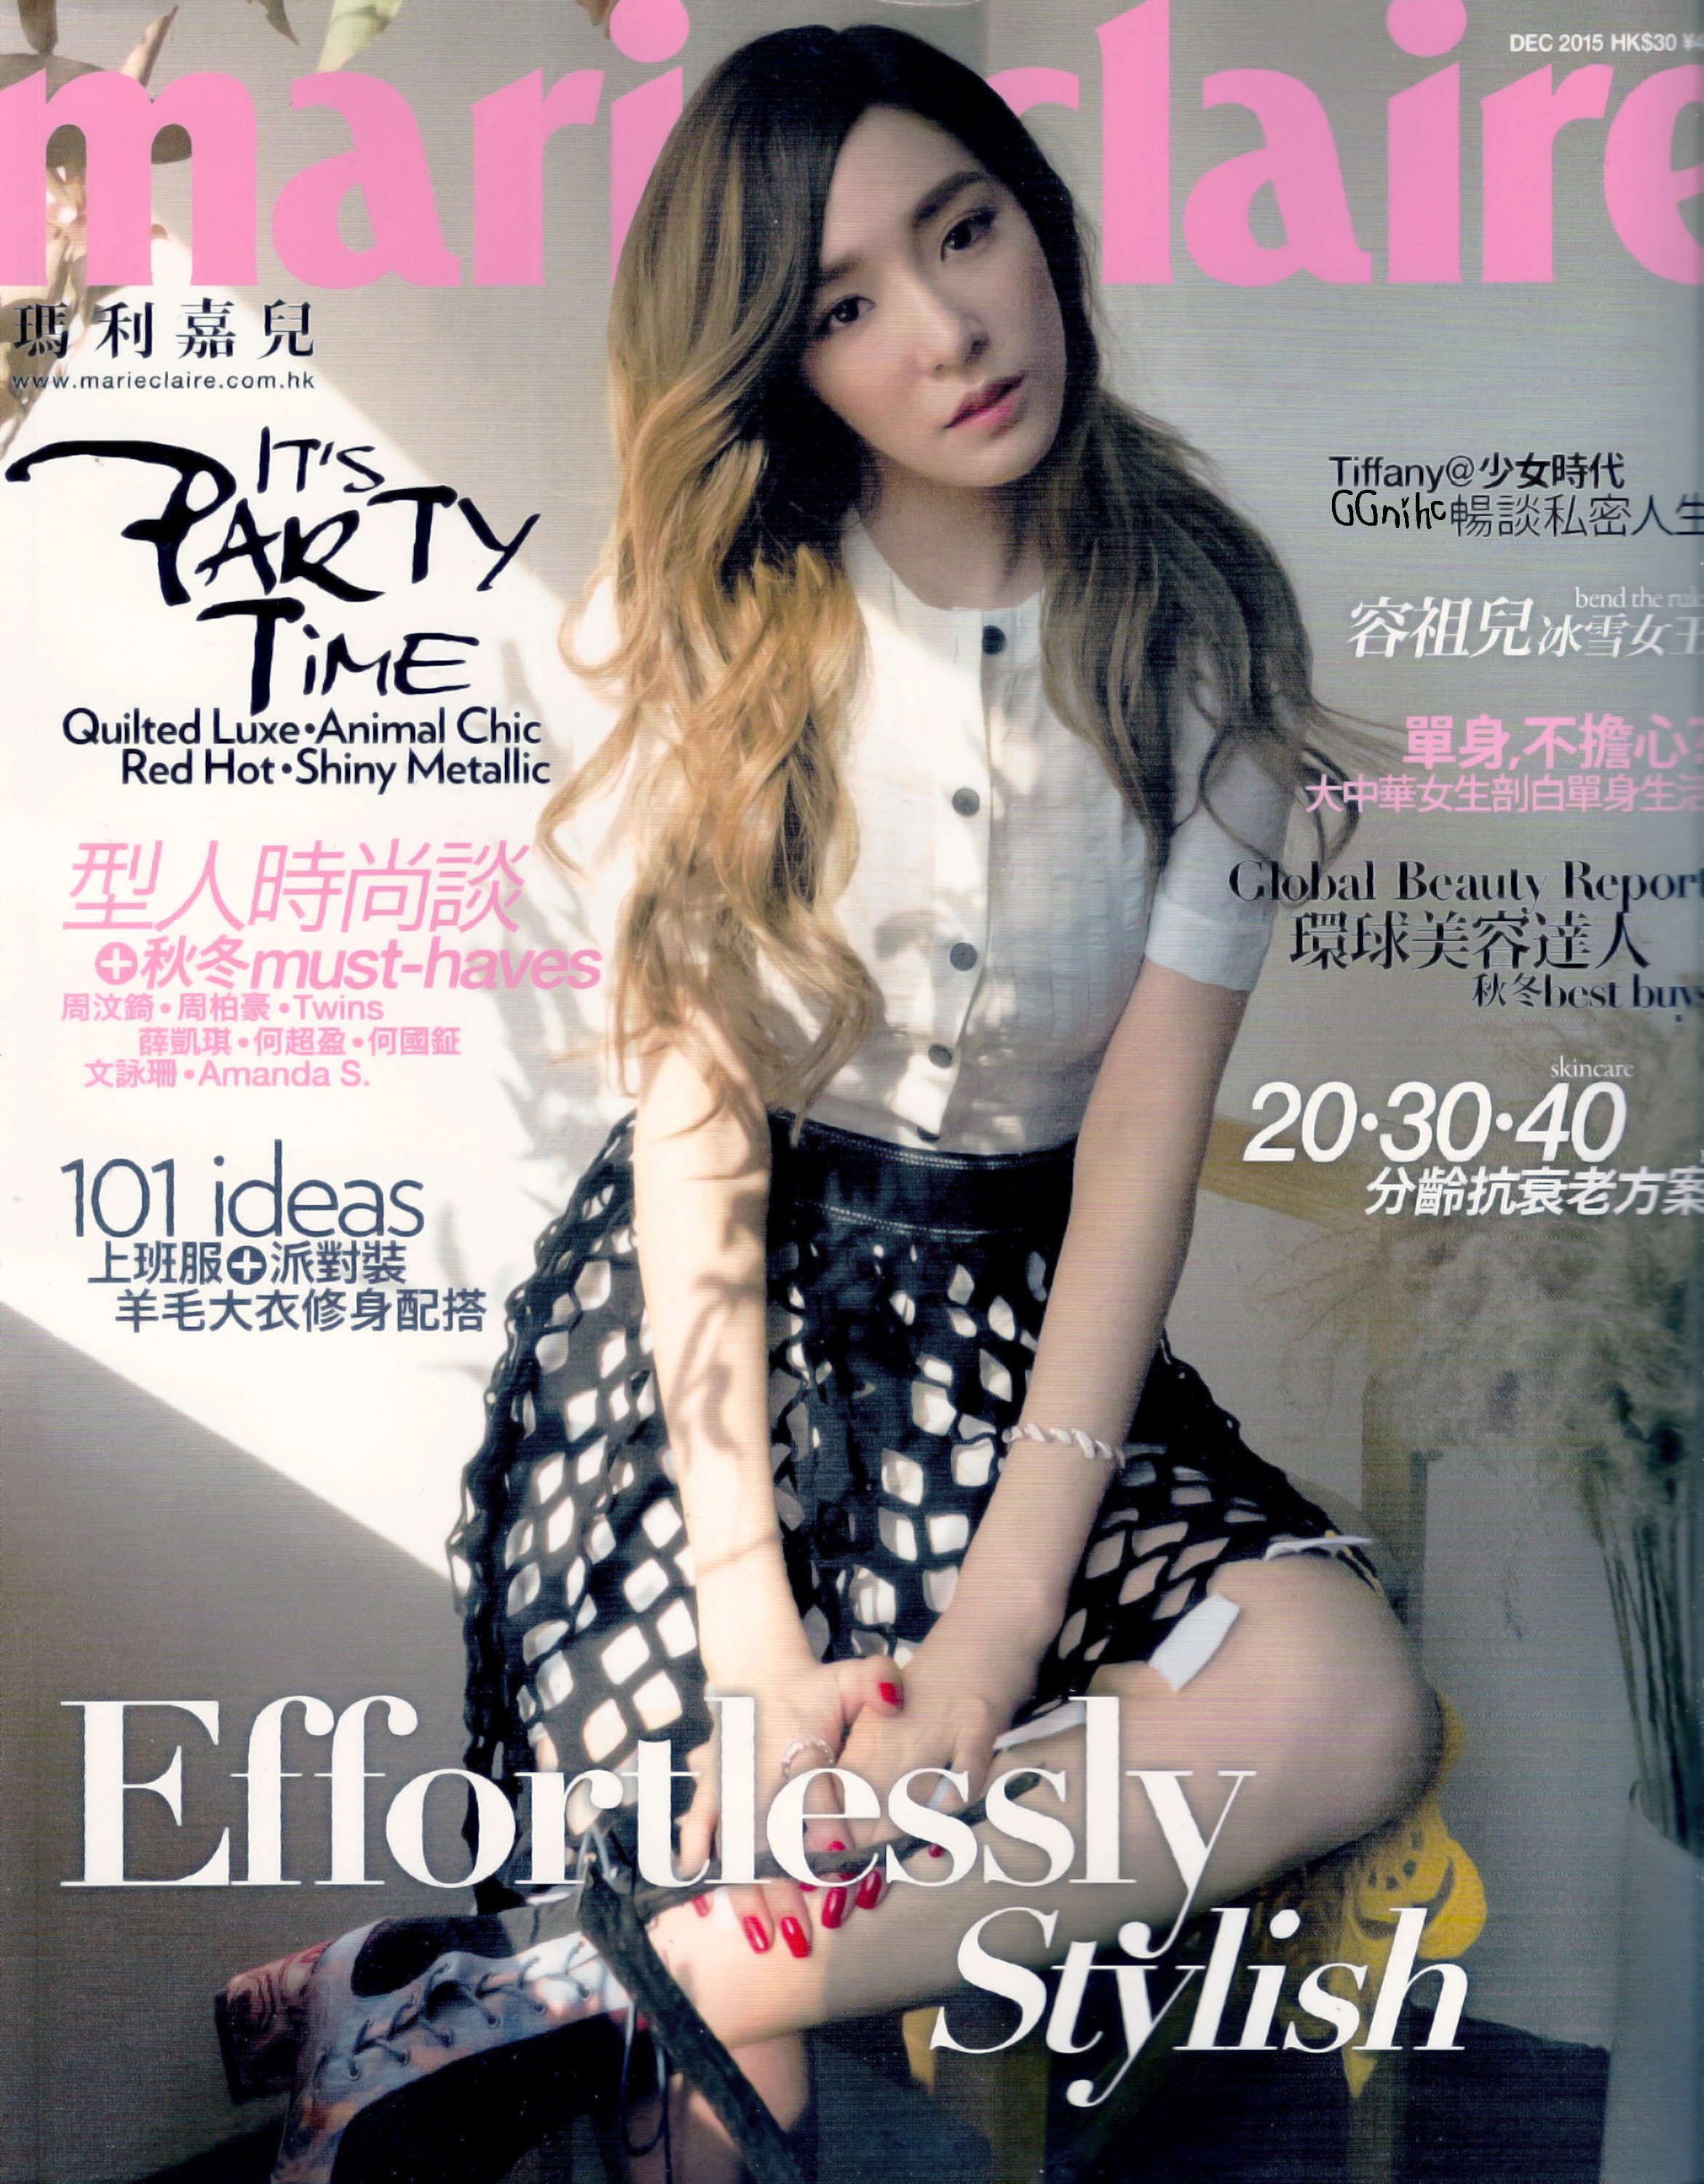 [PIC][03-11-2015]Tiffany xuất hiện trên ấn phẩm tháng 12 của tạp chí "MARIE CLAIRE HONGKONG" GpxkQ87fAB-3000x3000